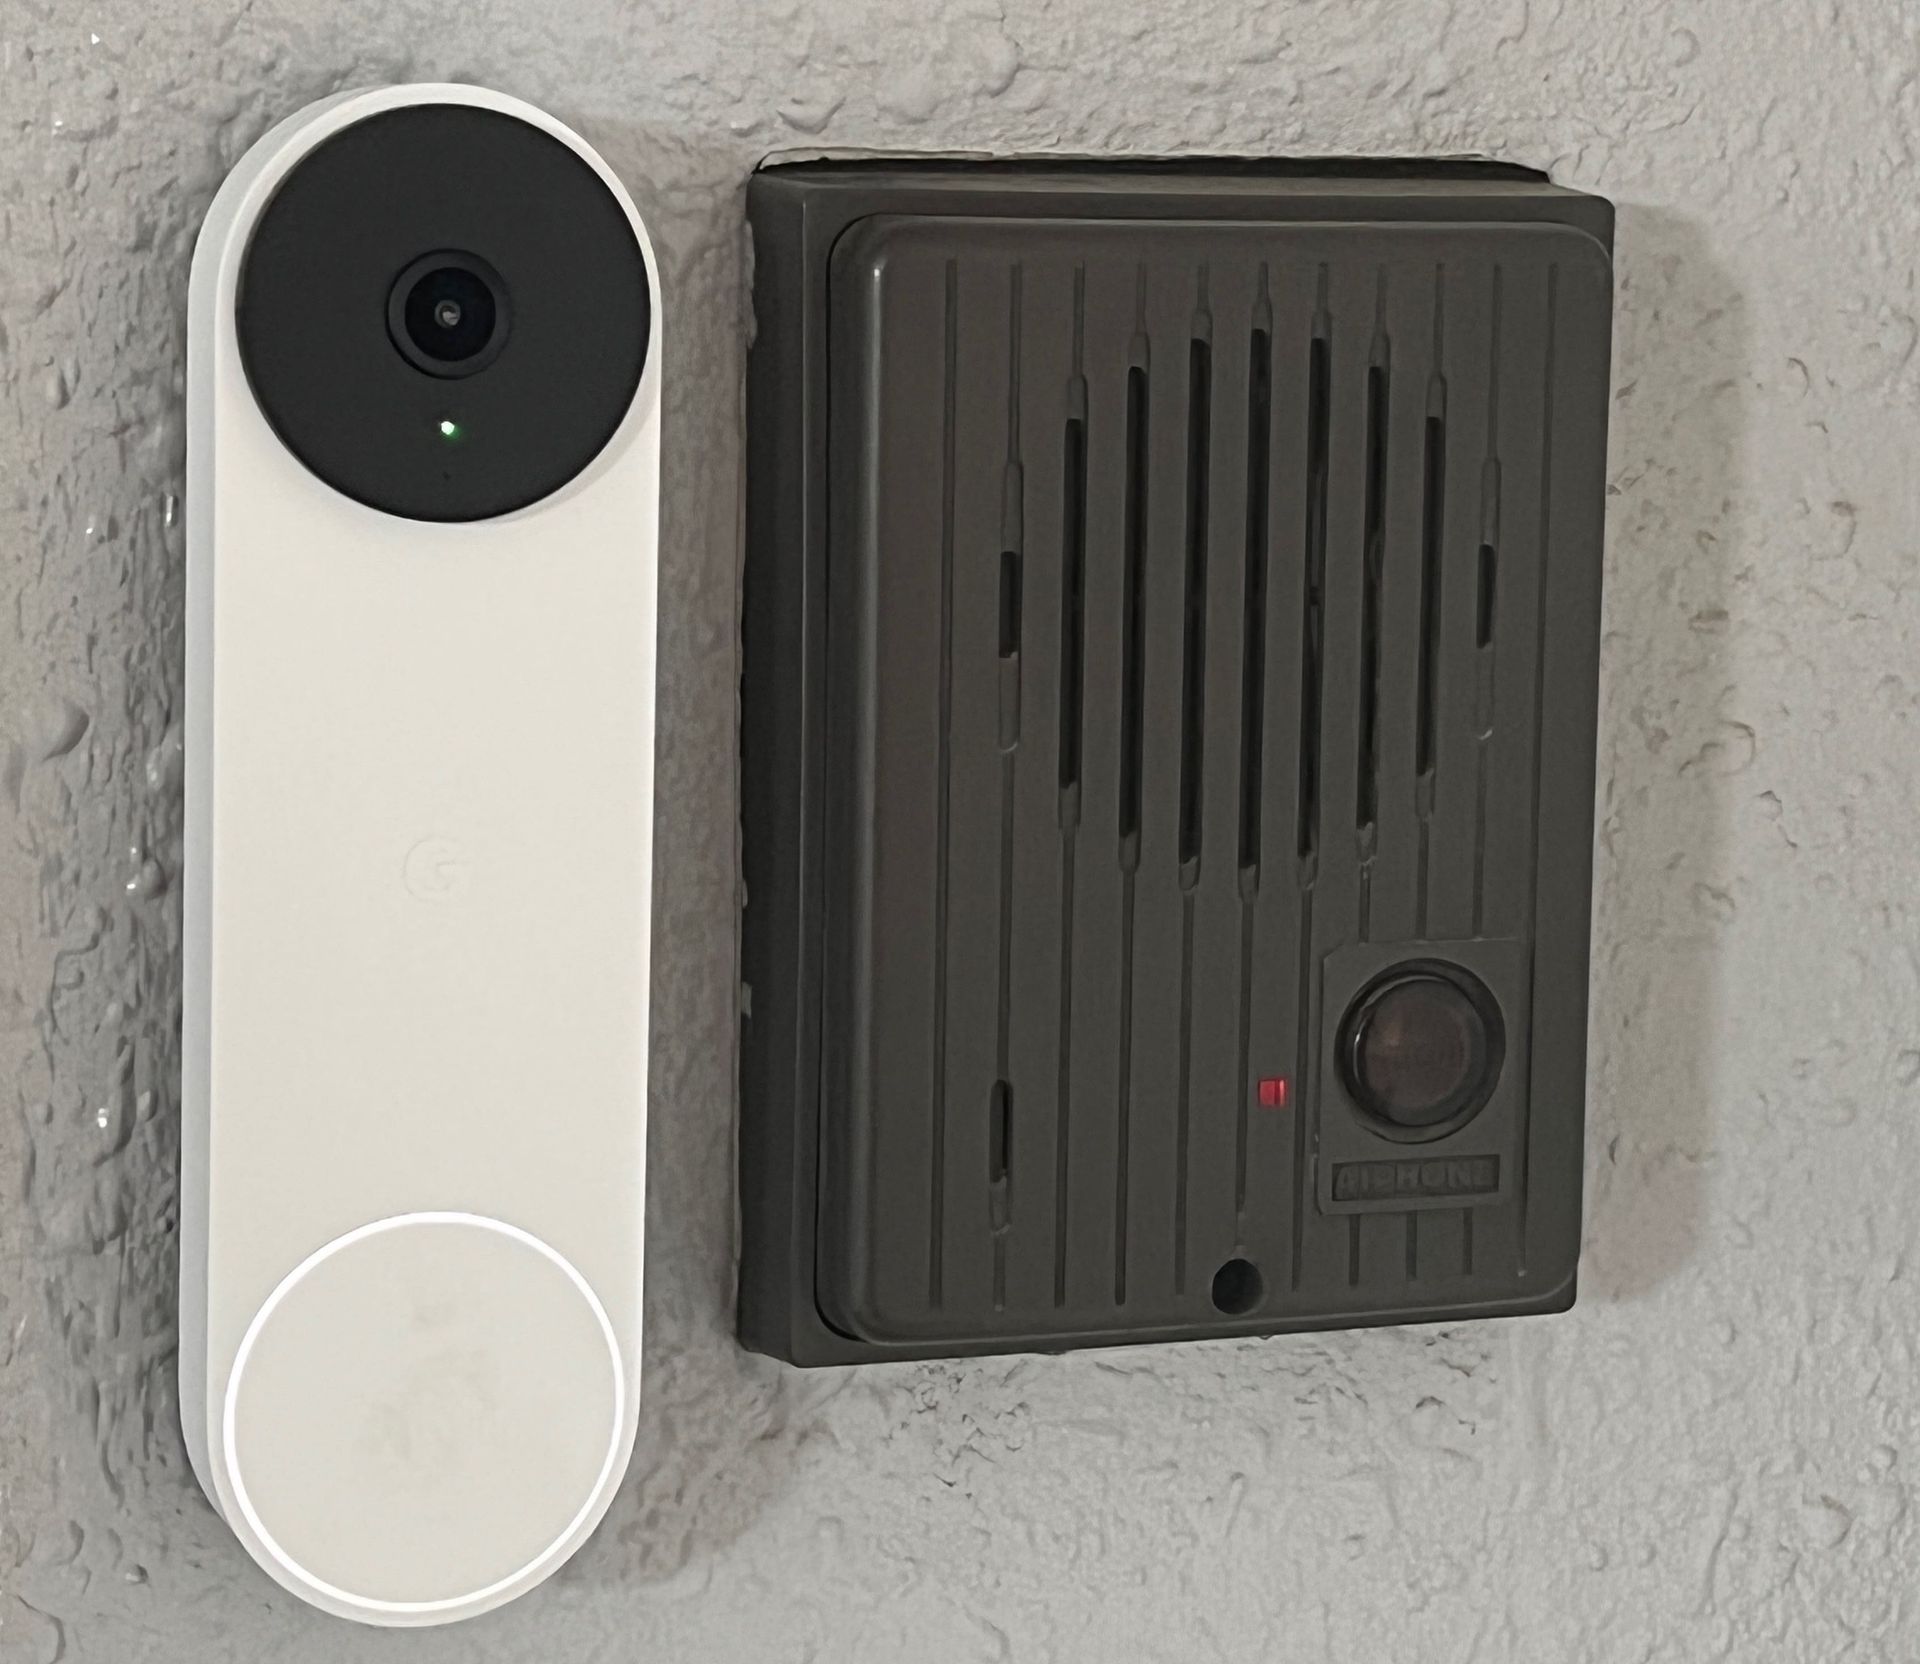 Google Nest Doorbell」を導入してみた - ケータイ Watch